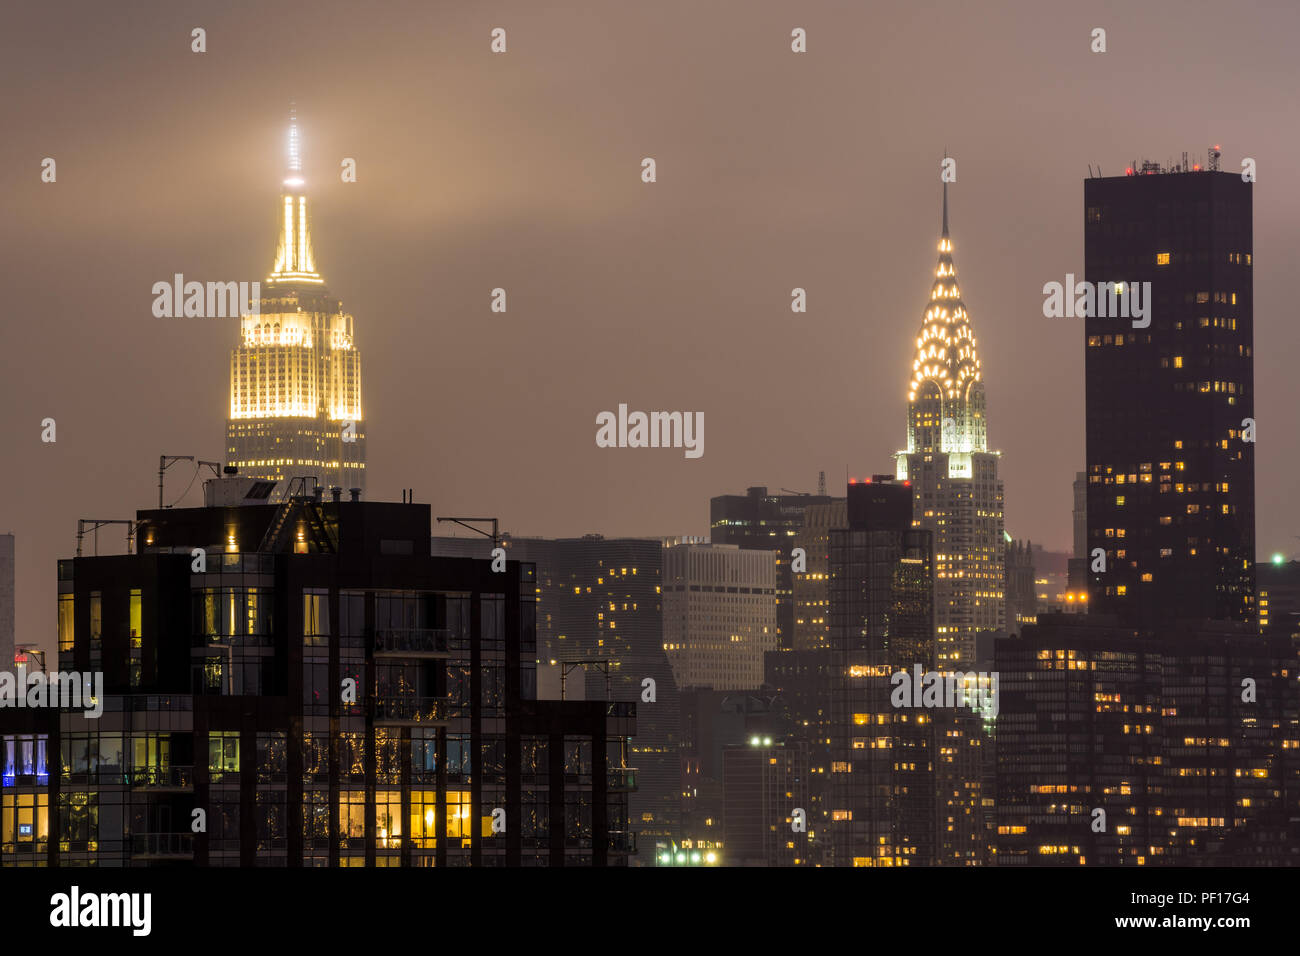 L'Empire State Building et le Chrysler Building éclairé la nuit vu de Long Island City, Queens, New York. Banque D'Images